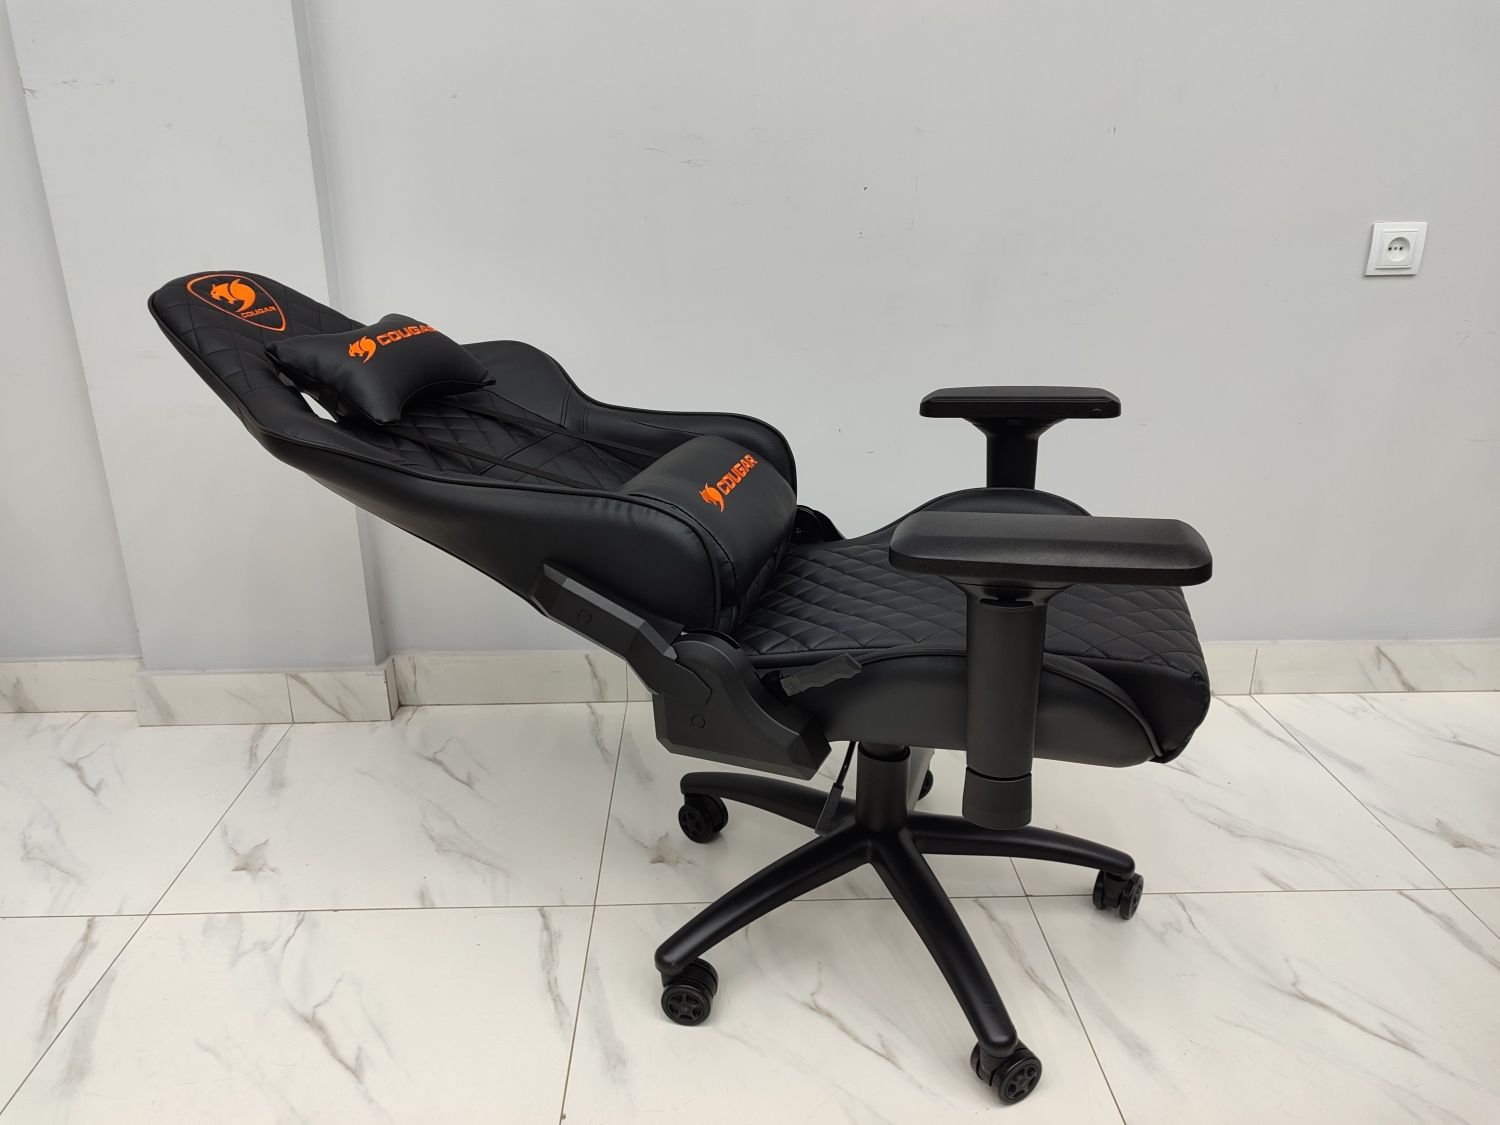 Компьютерные игровые кресло, кресло для геймеров модель Cougar  black